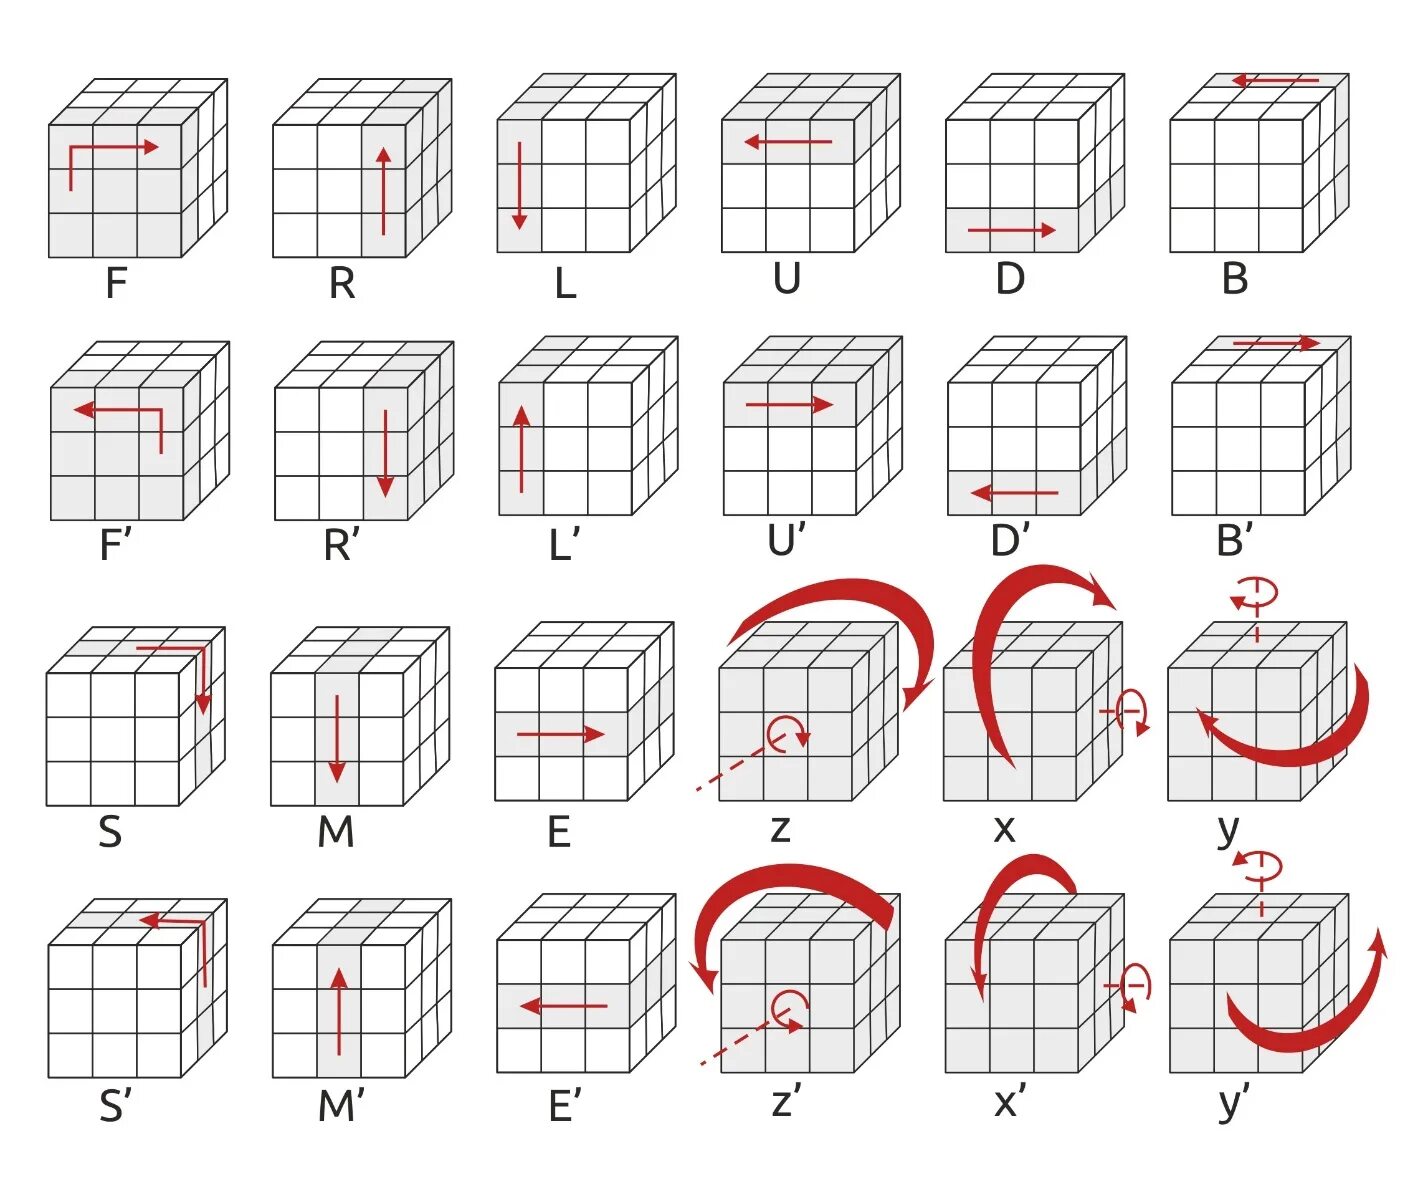 Как собрать кубик рубика. Формула сборки кубика Рубика 3х3. Схема как собирать кубик рубик 3х3. Схема сборки кубика Рубика 3х3. Кубик-Рубика 3х3 сборка пошагово.